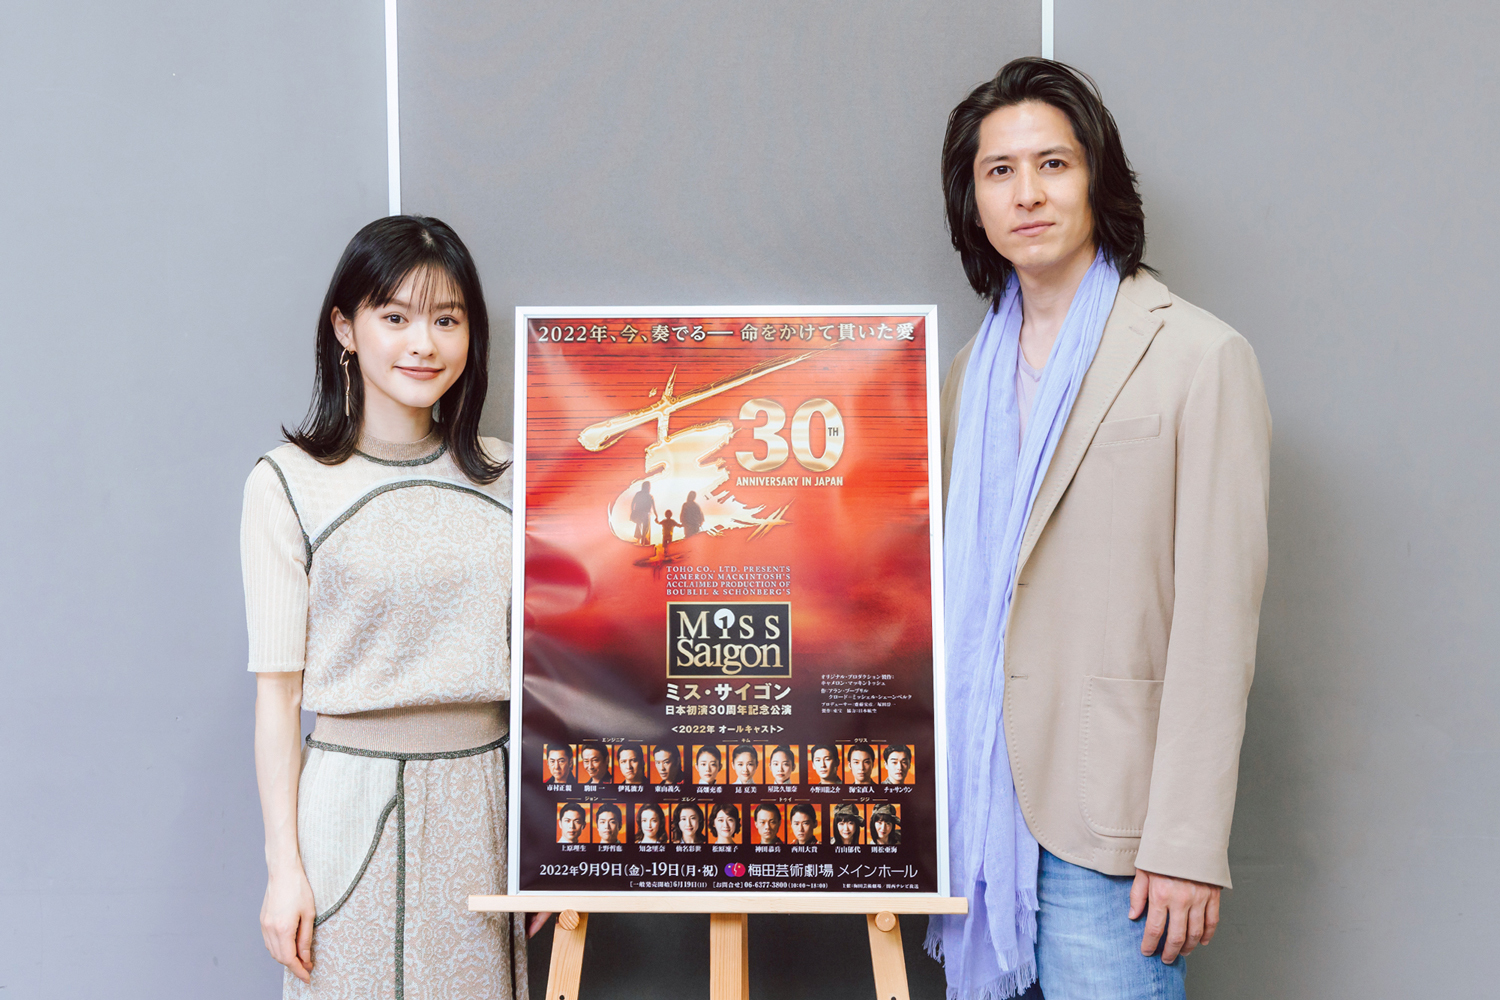 伊礼彼方と昆夏美、日本初演30周年のミュージカル『ミス・サイゴン』に